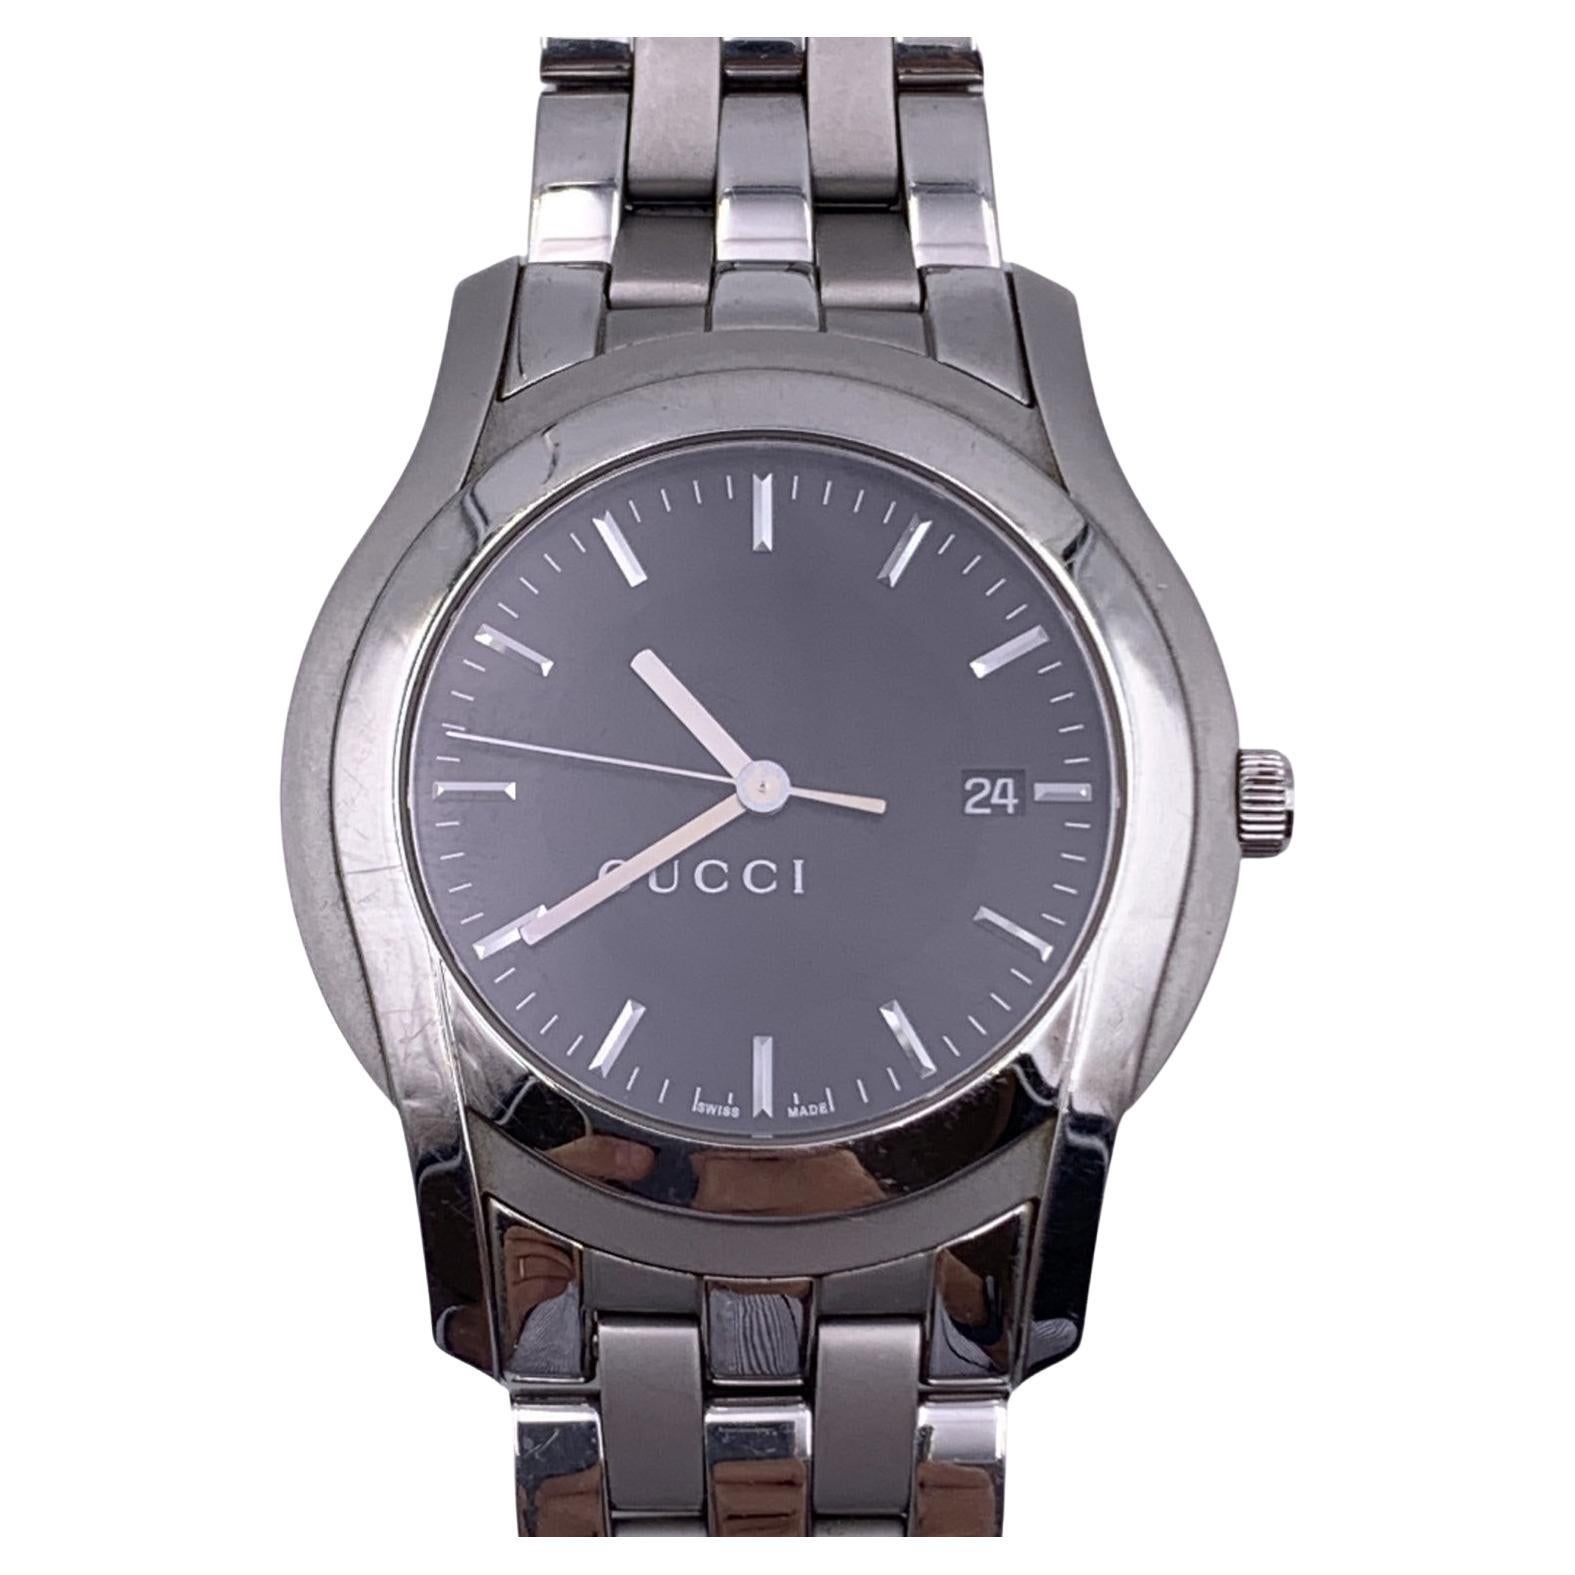 Silber-Edelstahl-Armbanduhr Mod 5500 XL von Gucci mit schwarzem Zifferblatt